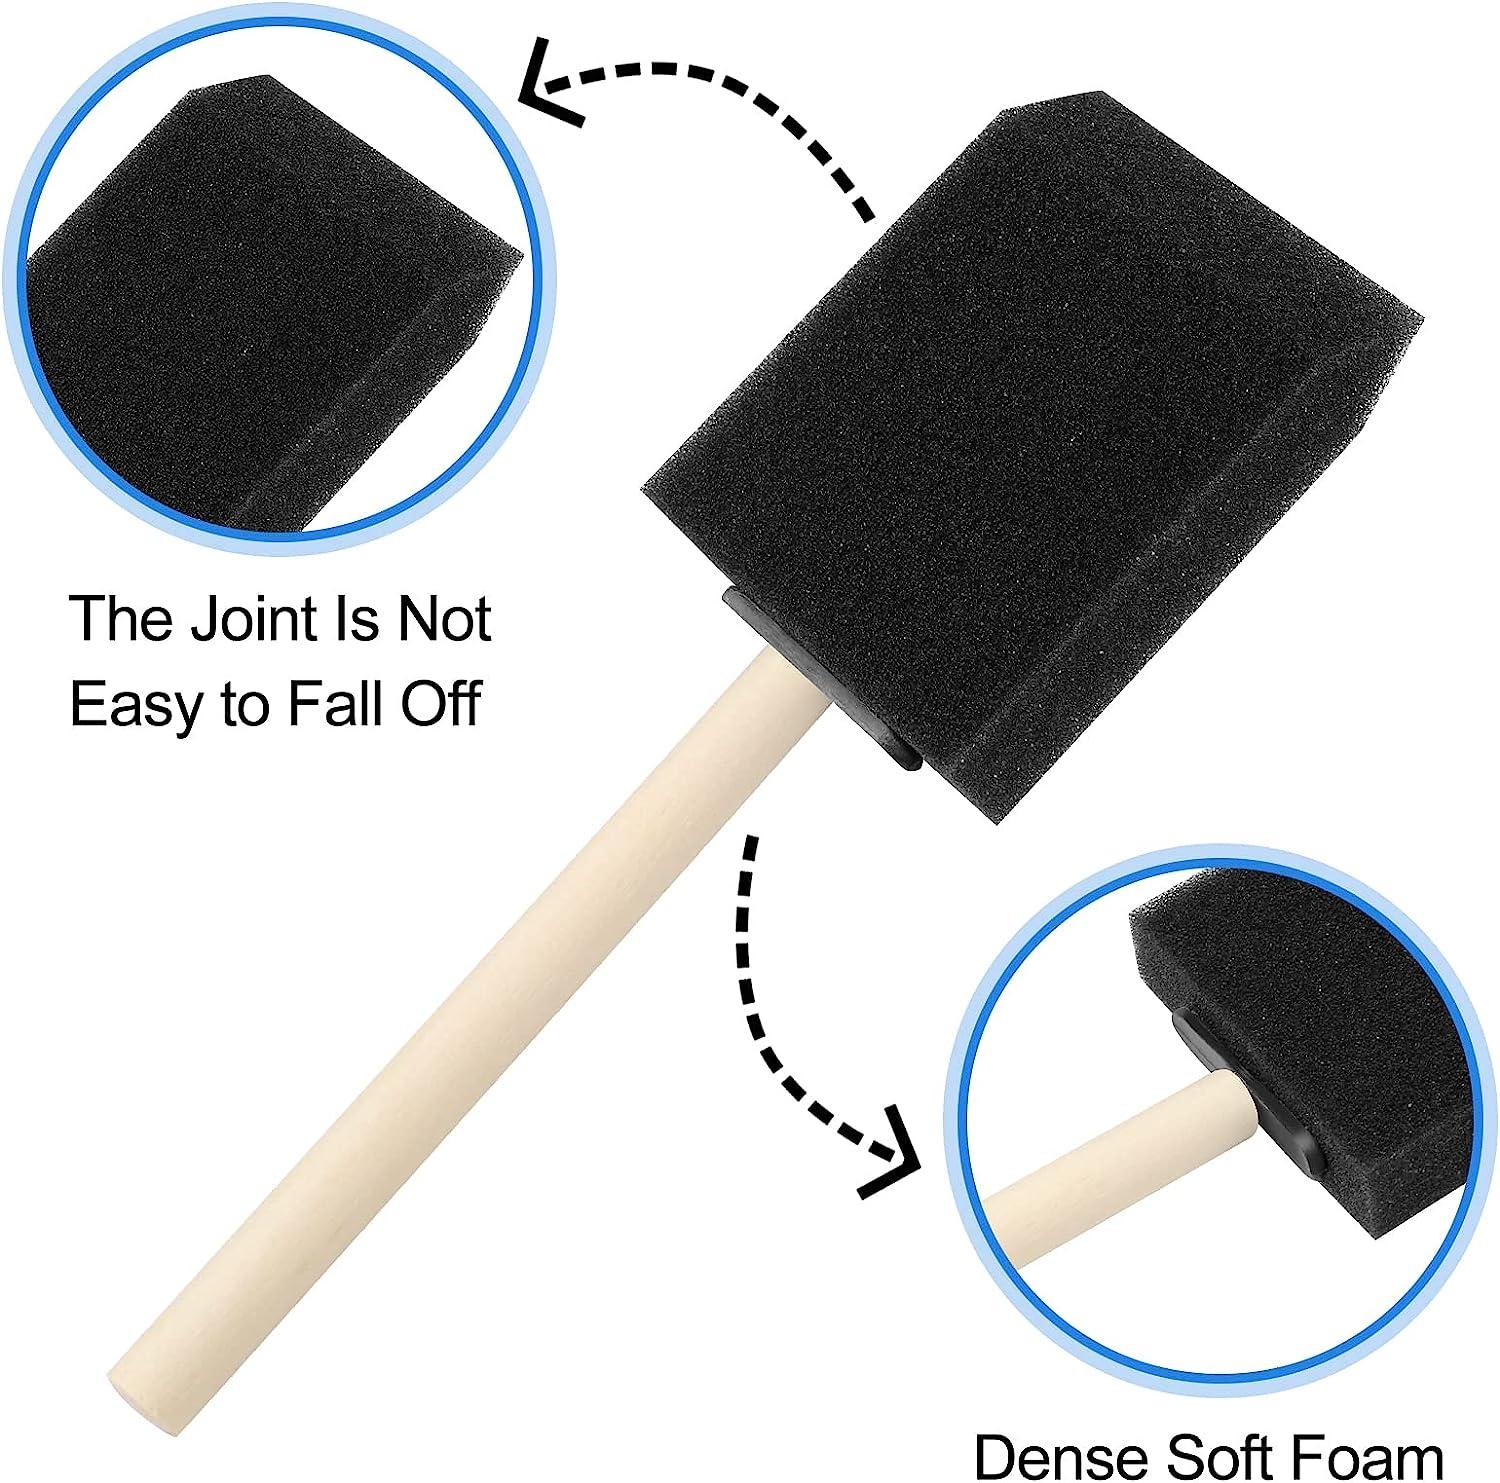 20 Pcs Foam Paint Brushes, 2 Inch Foam Brush, Wood Handle Sponge